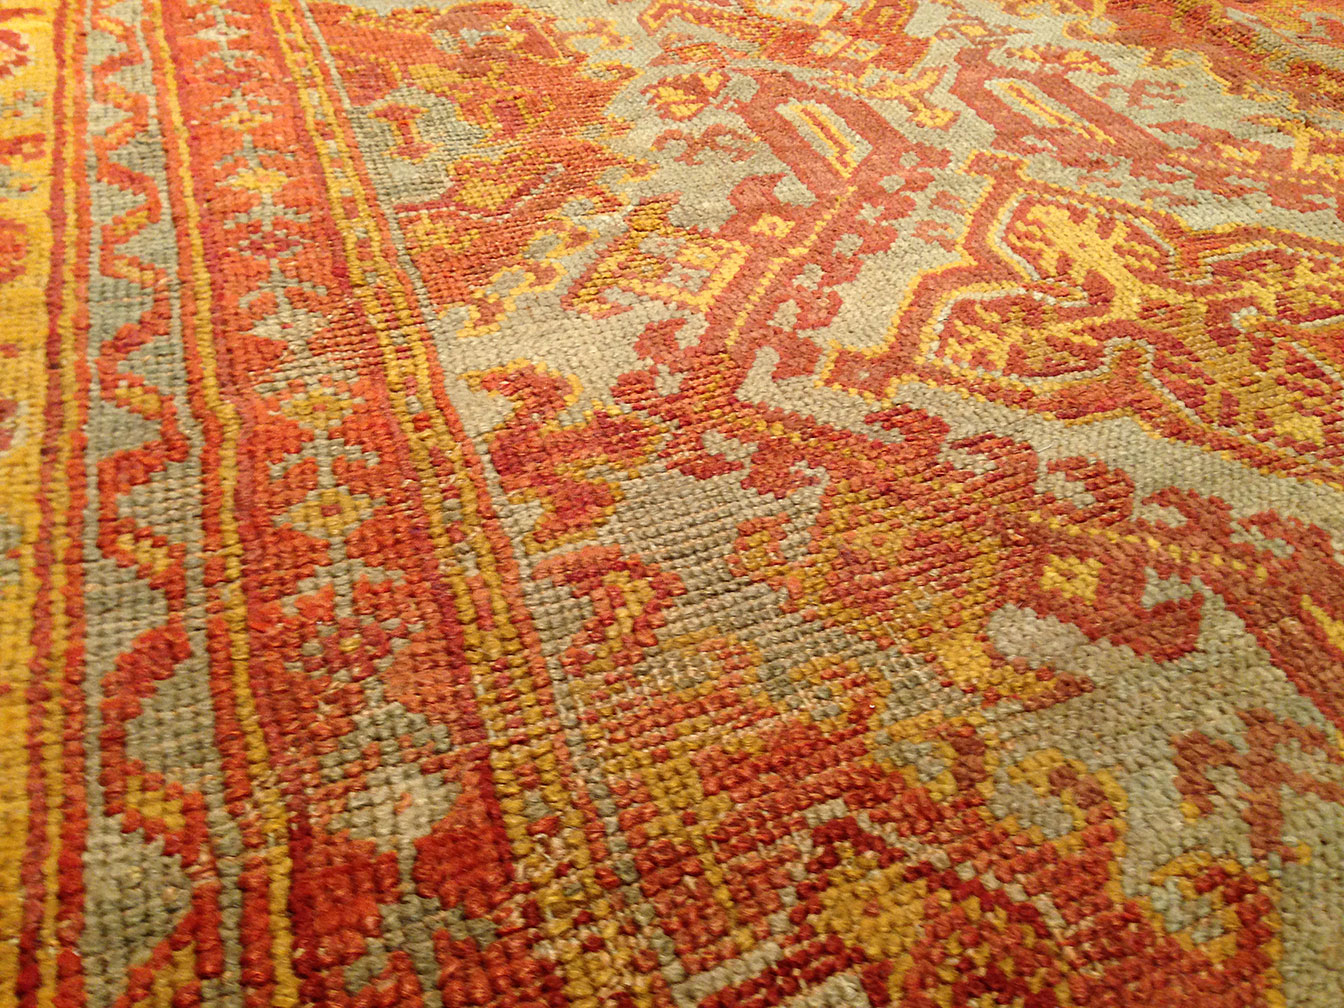 Antique oushak Carpet - # 9460